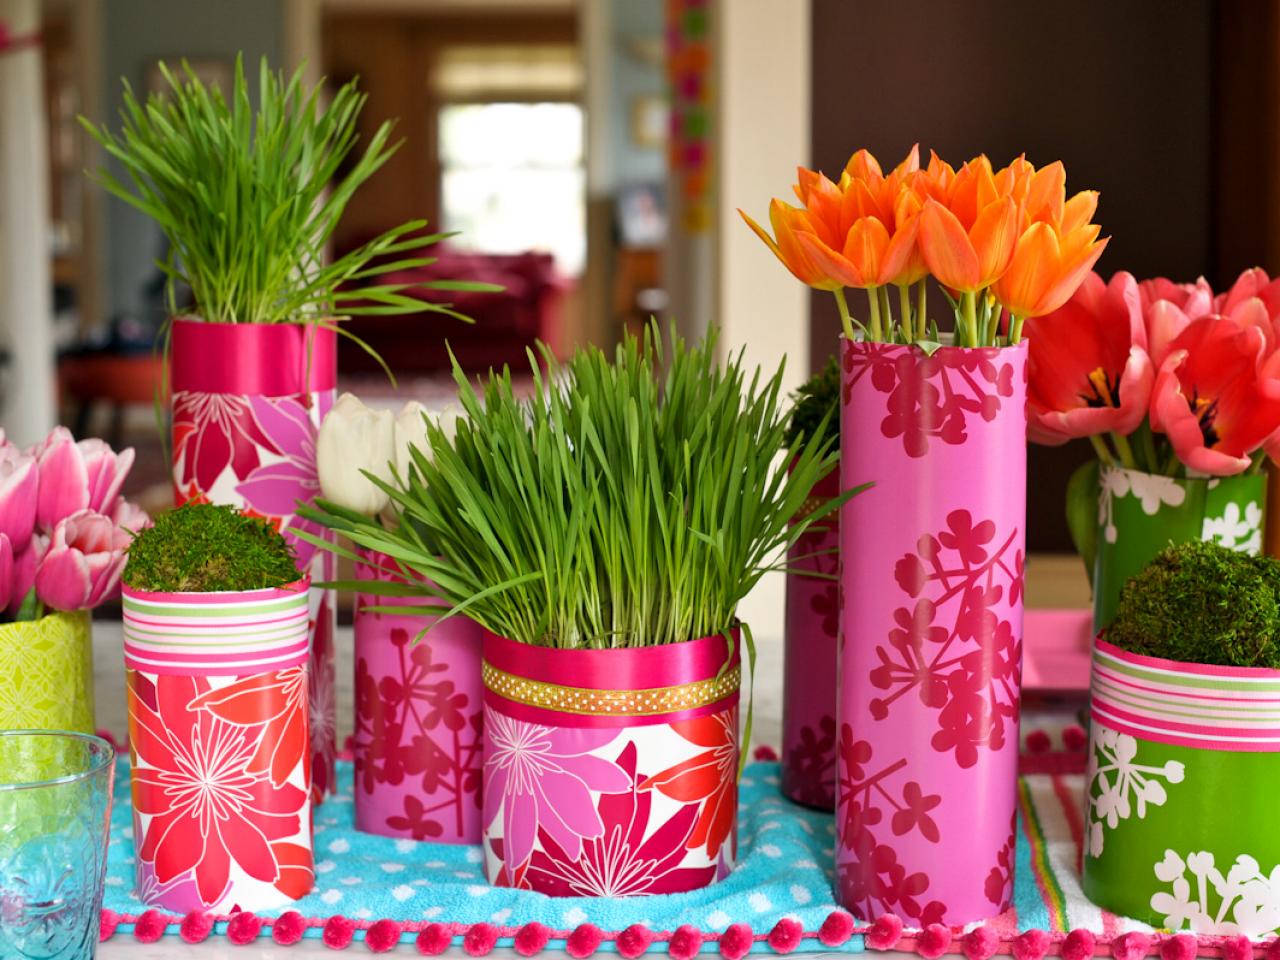 activité-manuelle-printemps-idées-vases-artisanaux